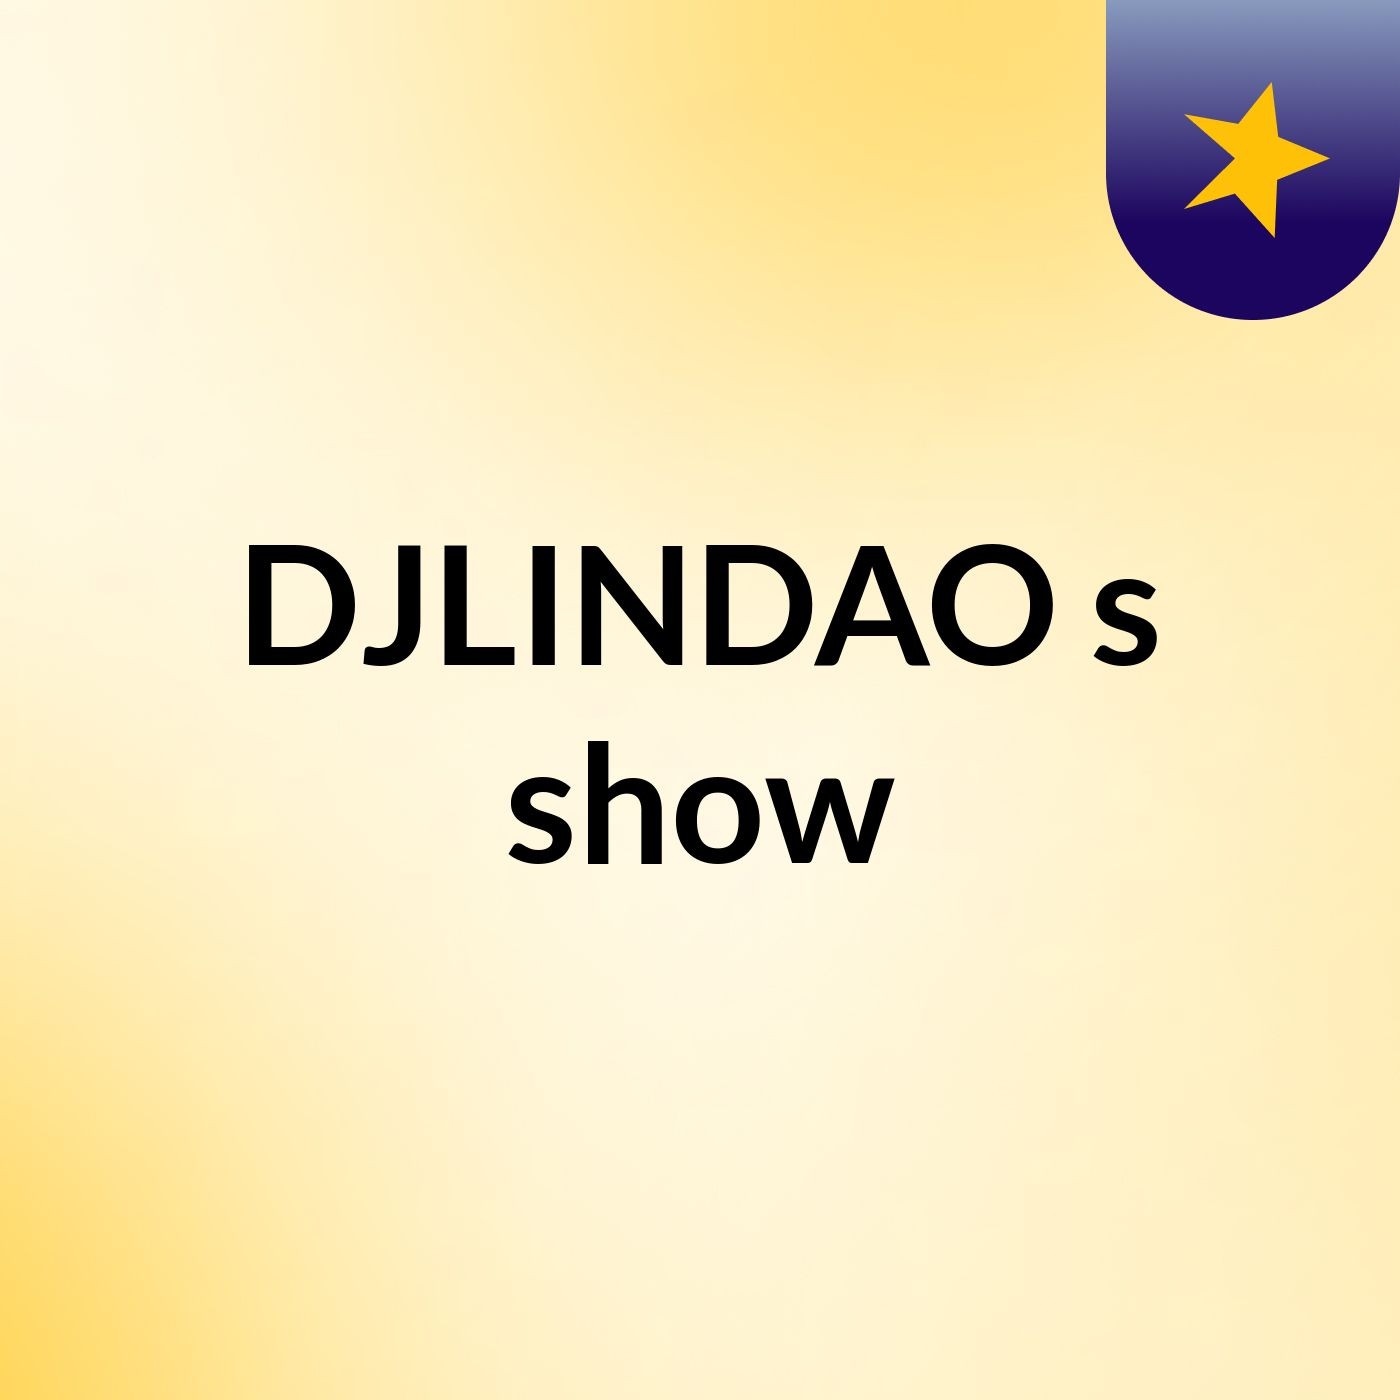 DJLINDAO's show